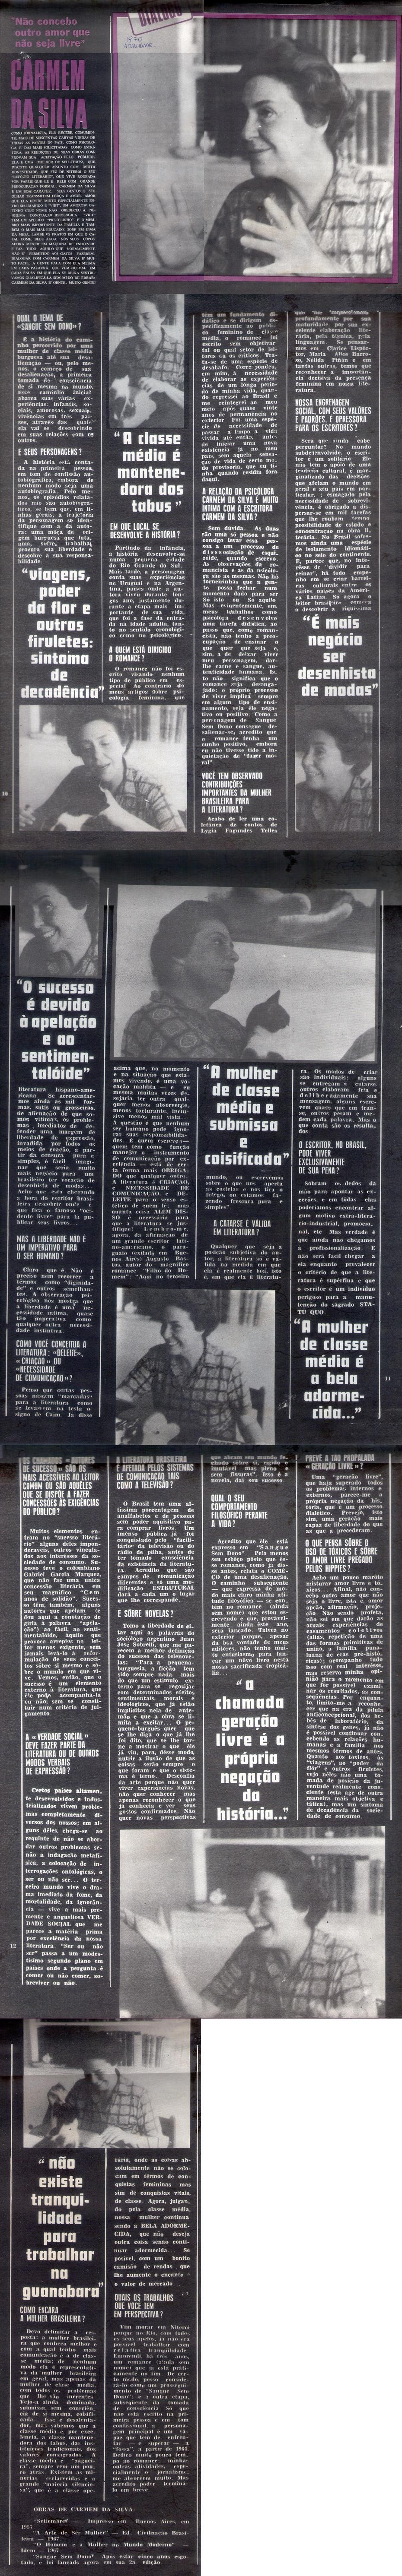 1970 - Atualidade. Carmen da Silva.